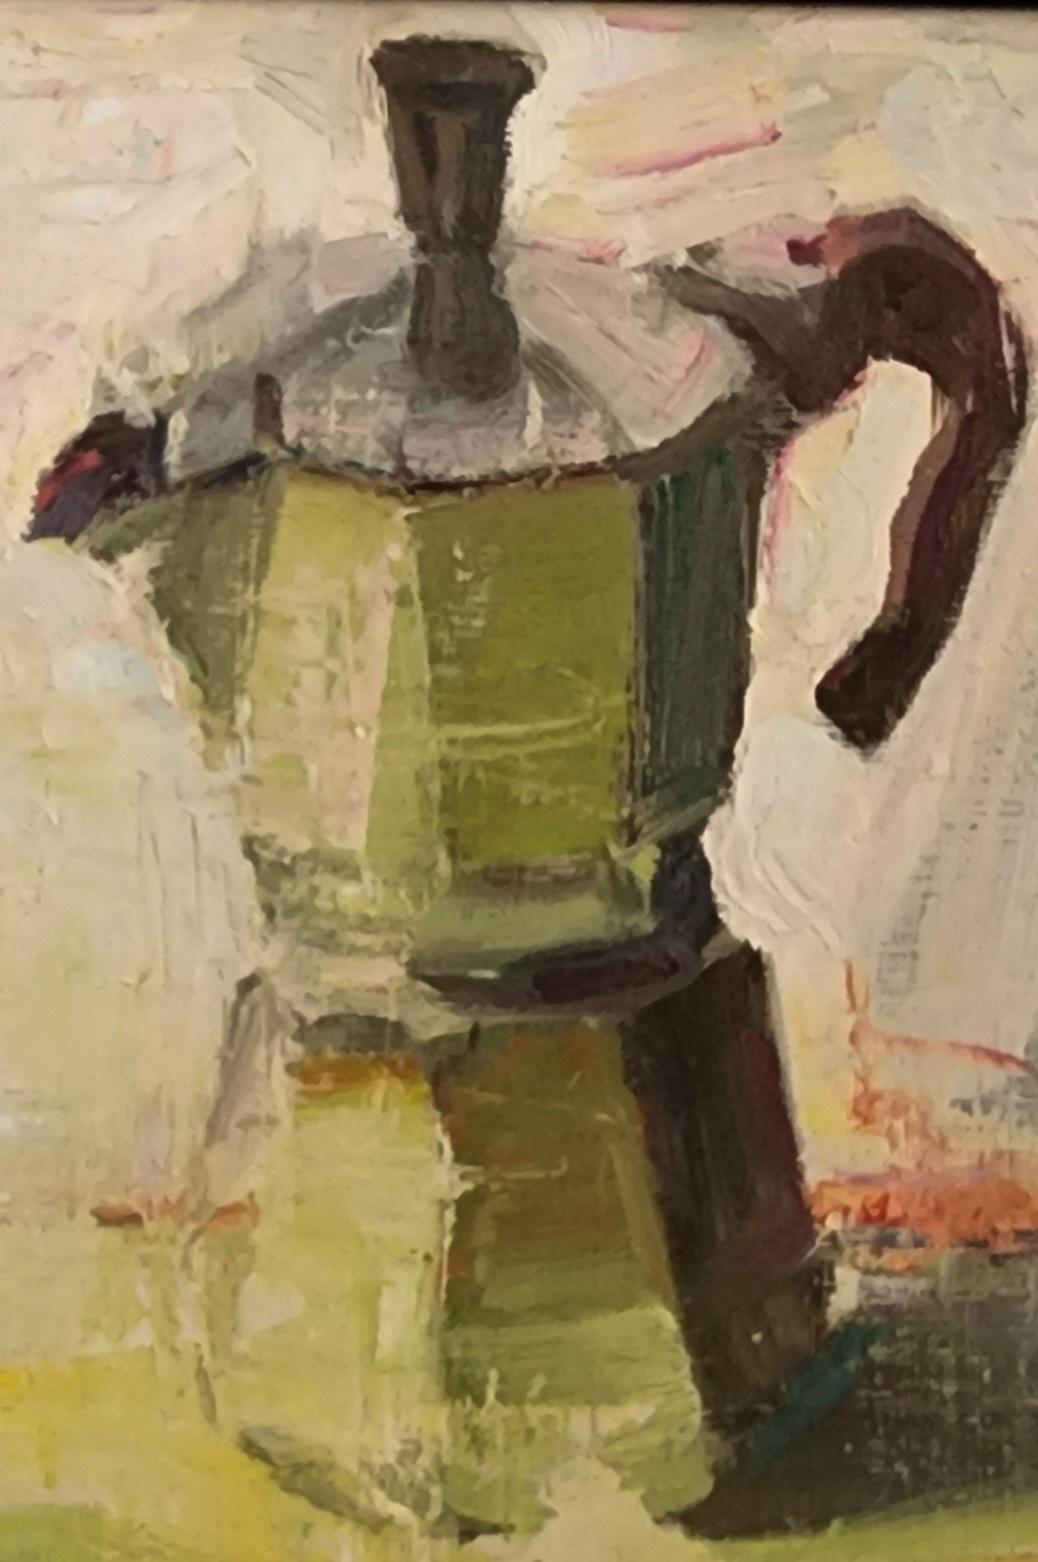 Moka Espresso est un exemple des couleurs vives que Beckner utilise dans ses peintures. 
L'art de Jim Beckner vibre au rythme de la ville. Ses peintures nerveuses et énergiques donnent une impression de mouvement, et bien que son sujet soit